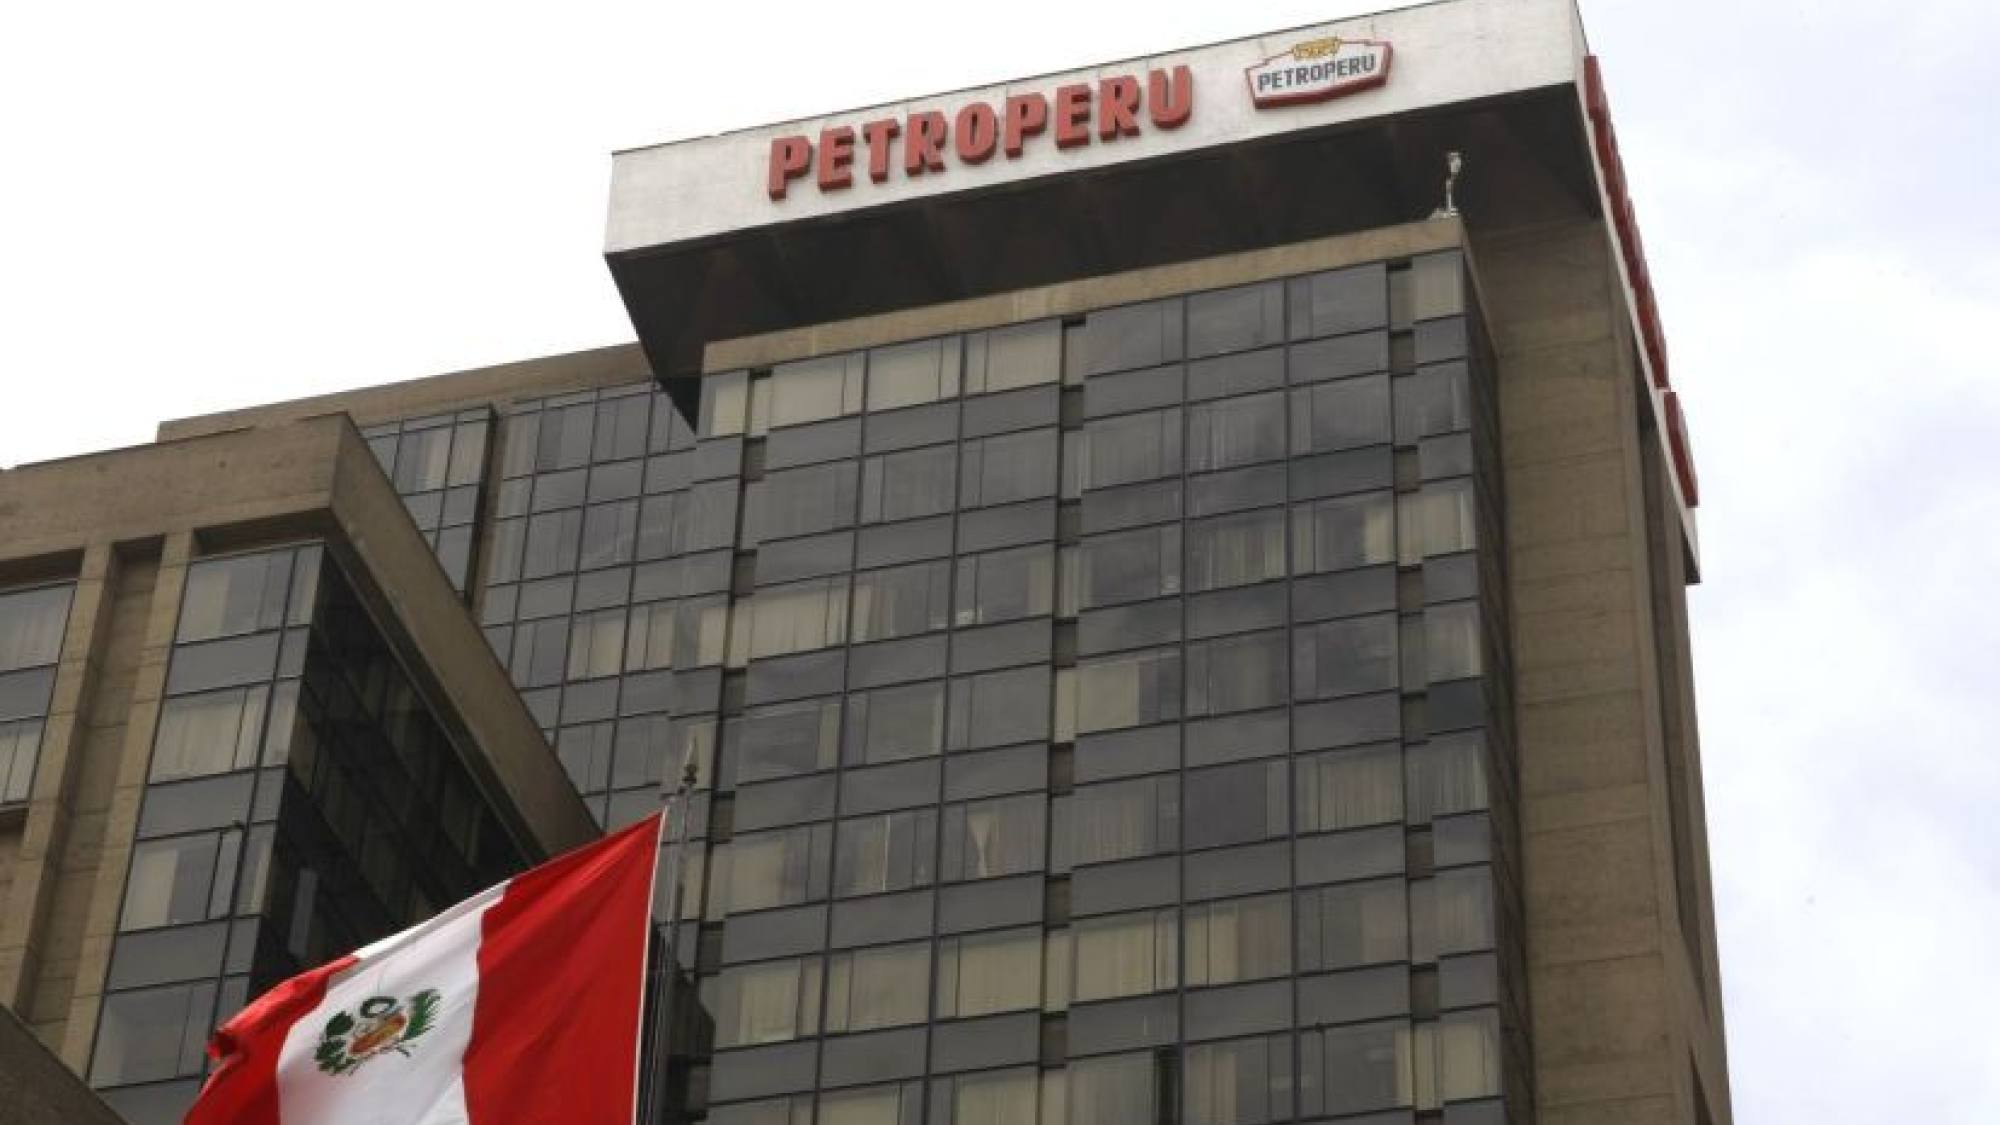 Los grandes sueldos de PetroPerú, Epicentro TV